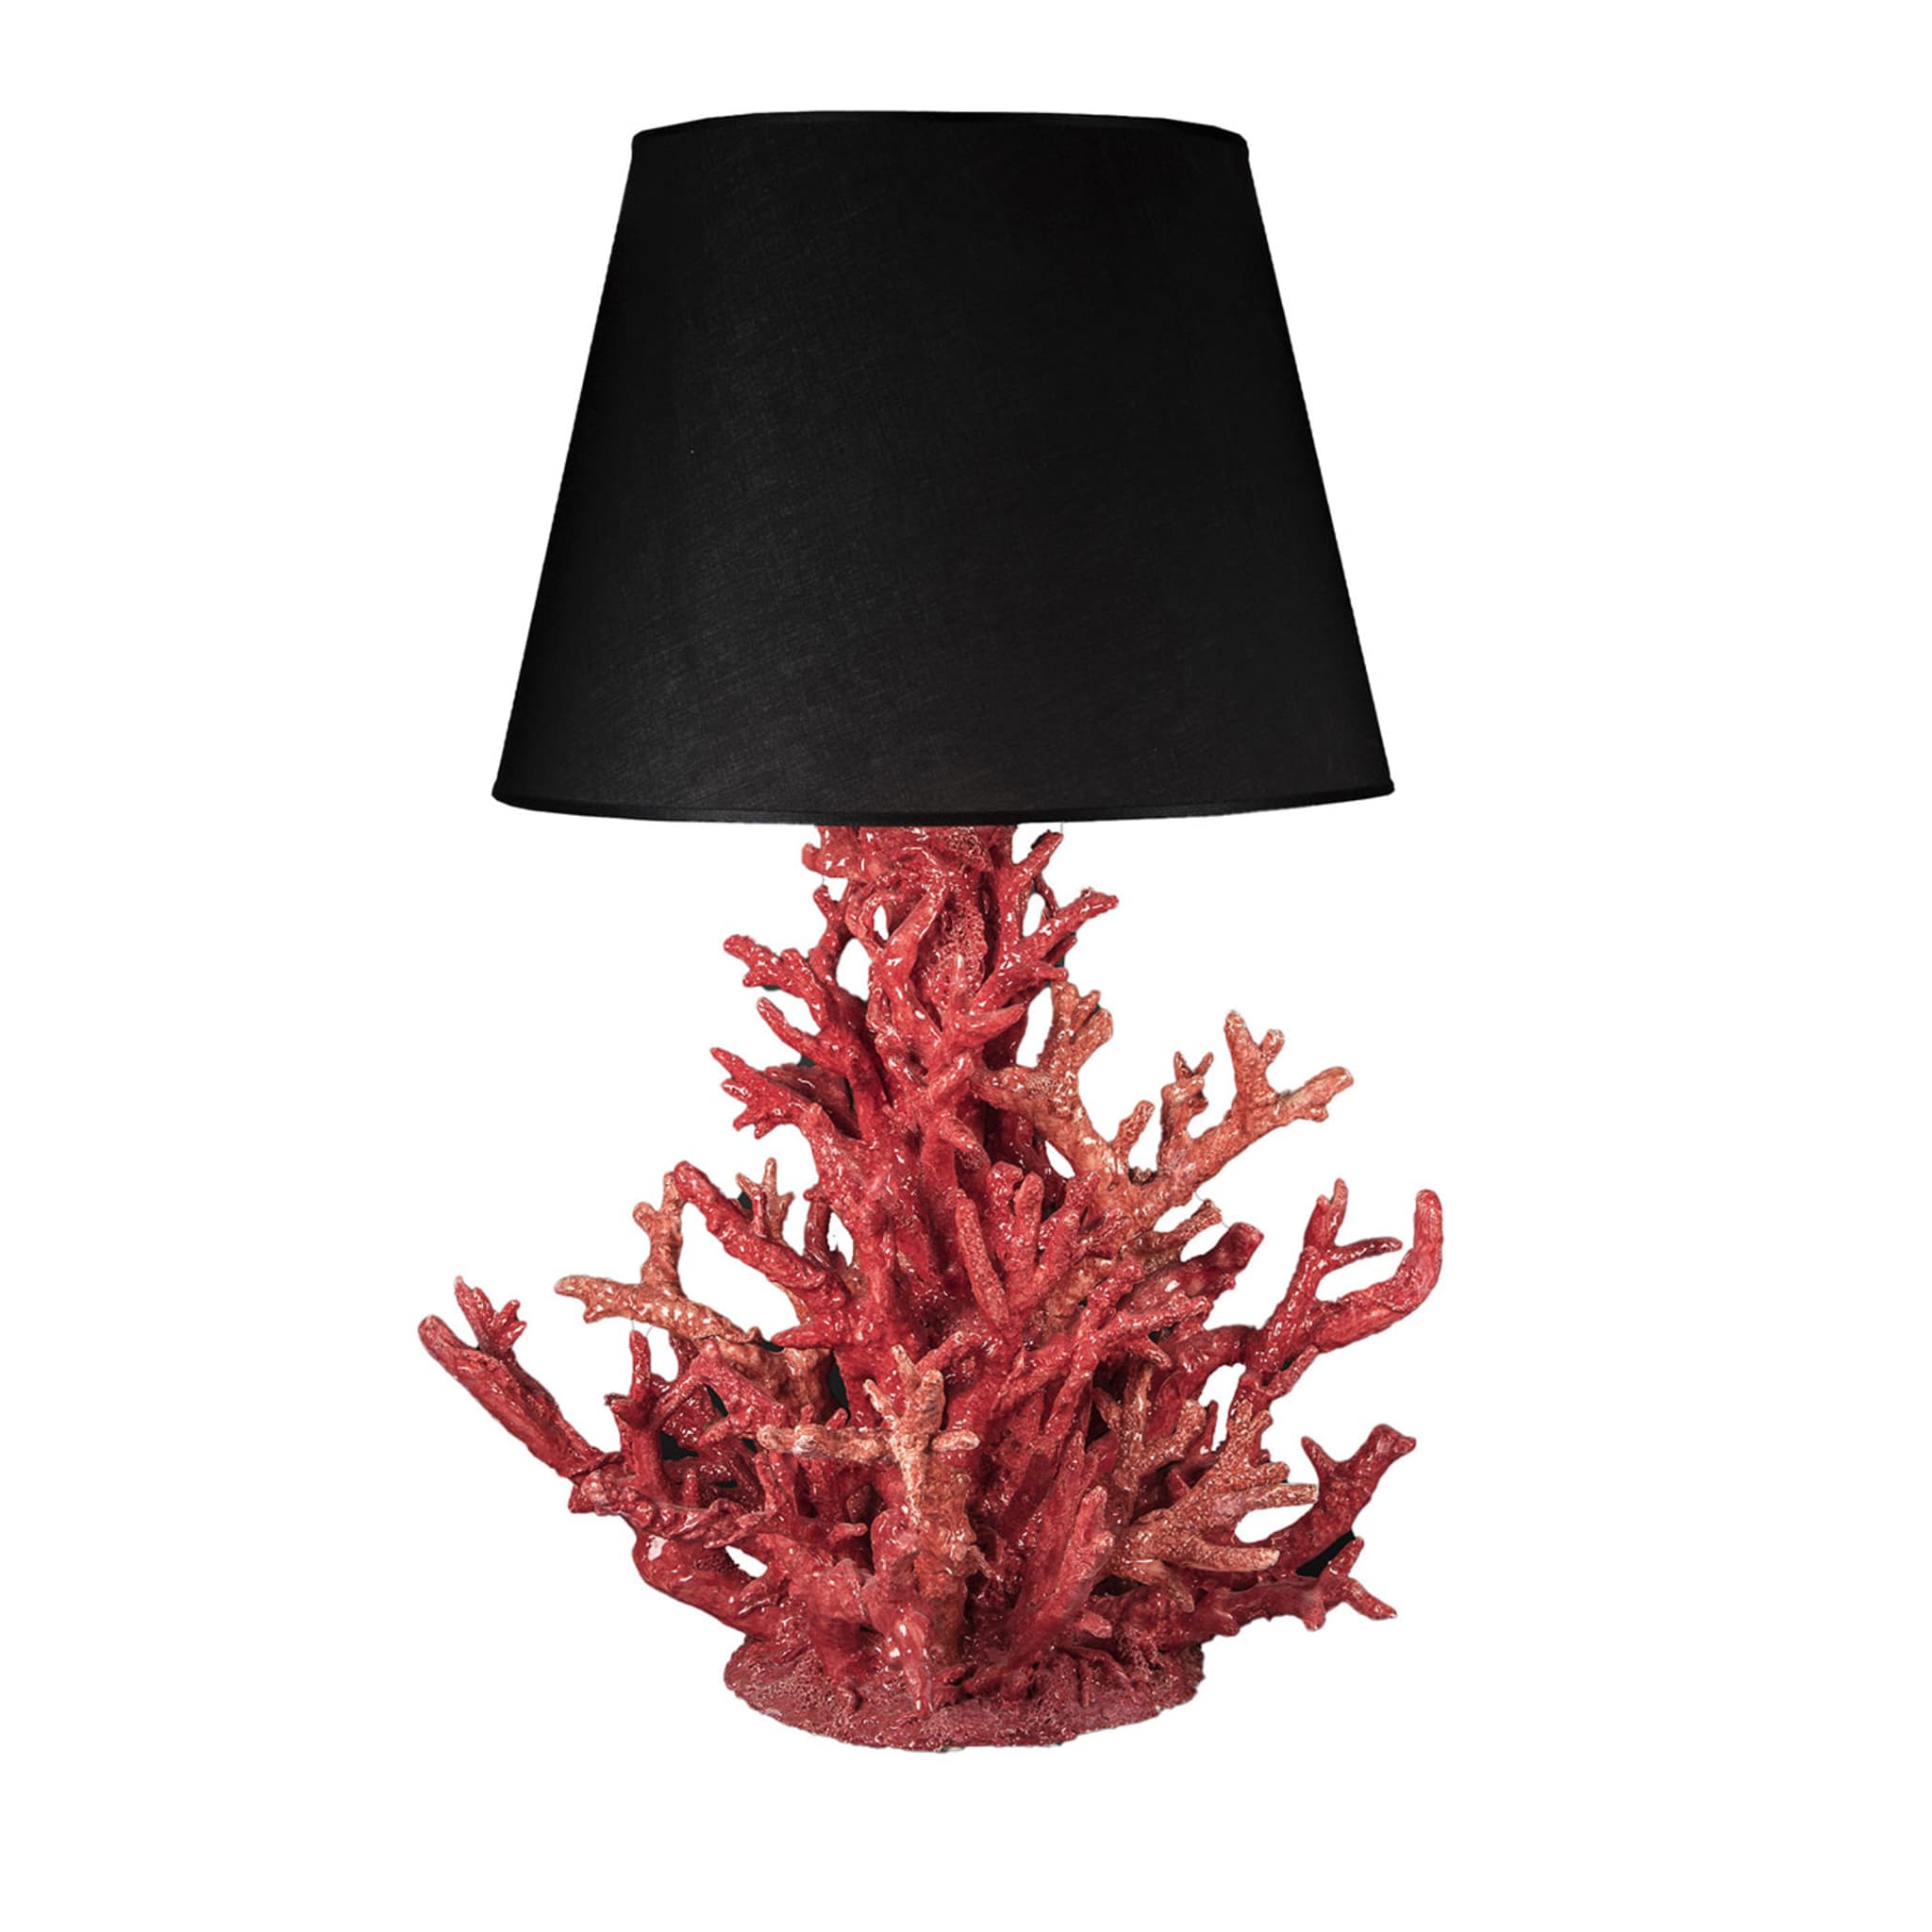 Coralli koralle & schwarz tischlampe von Antonio Fullin - Hauptansicht